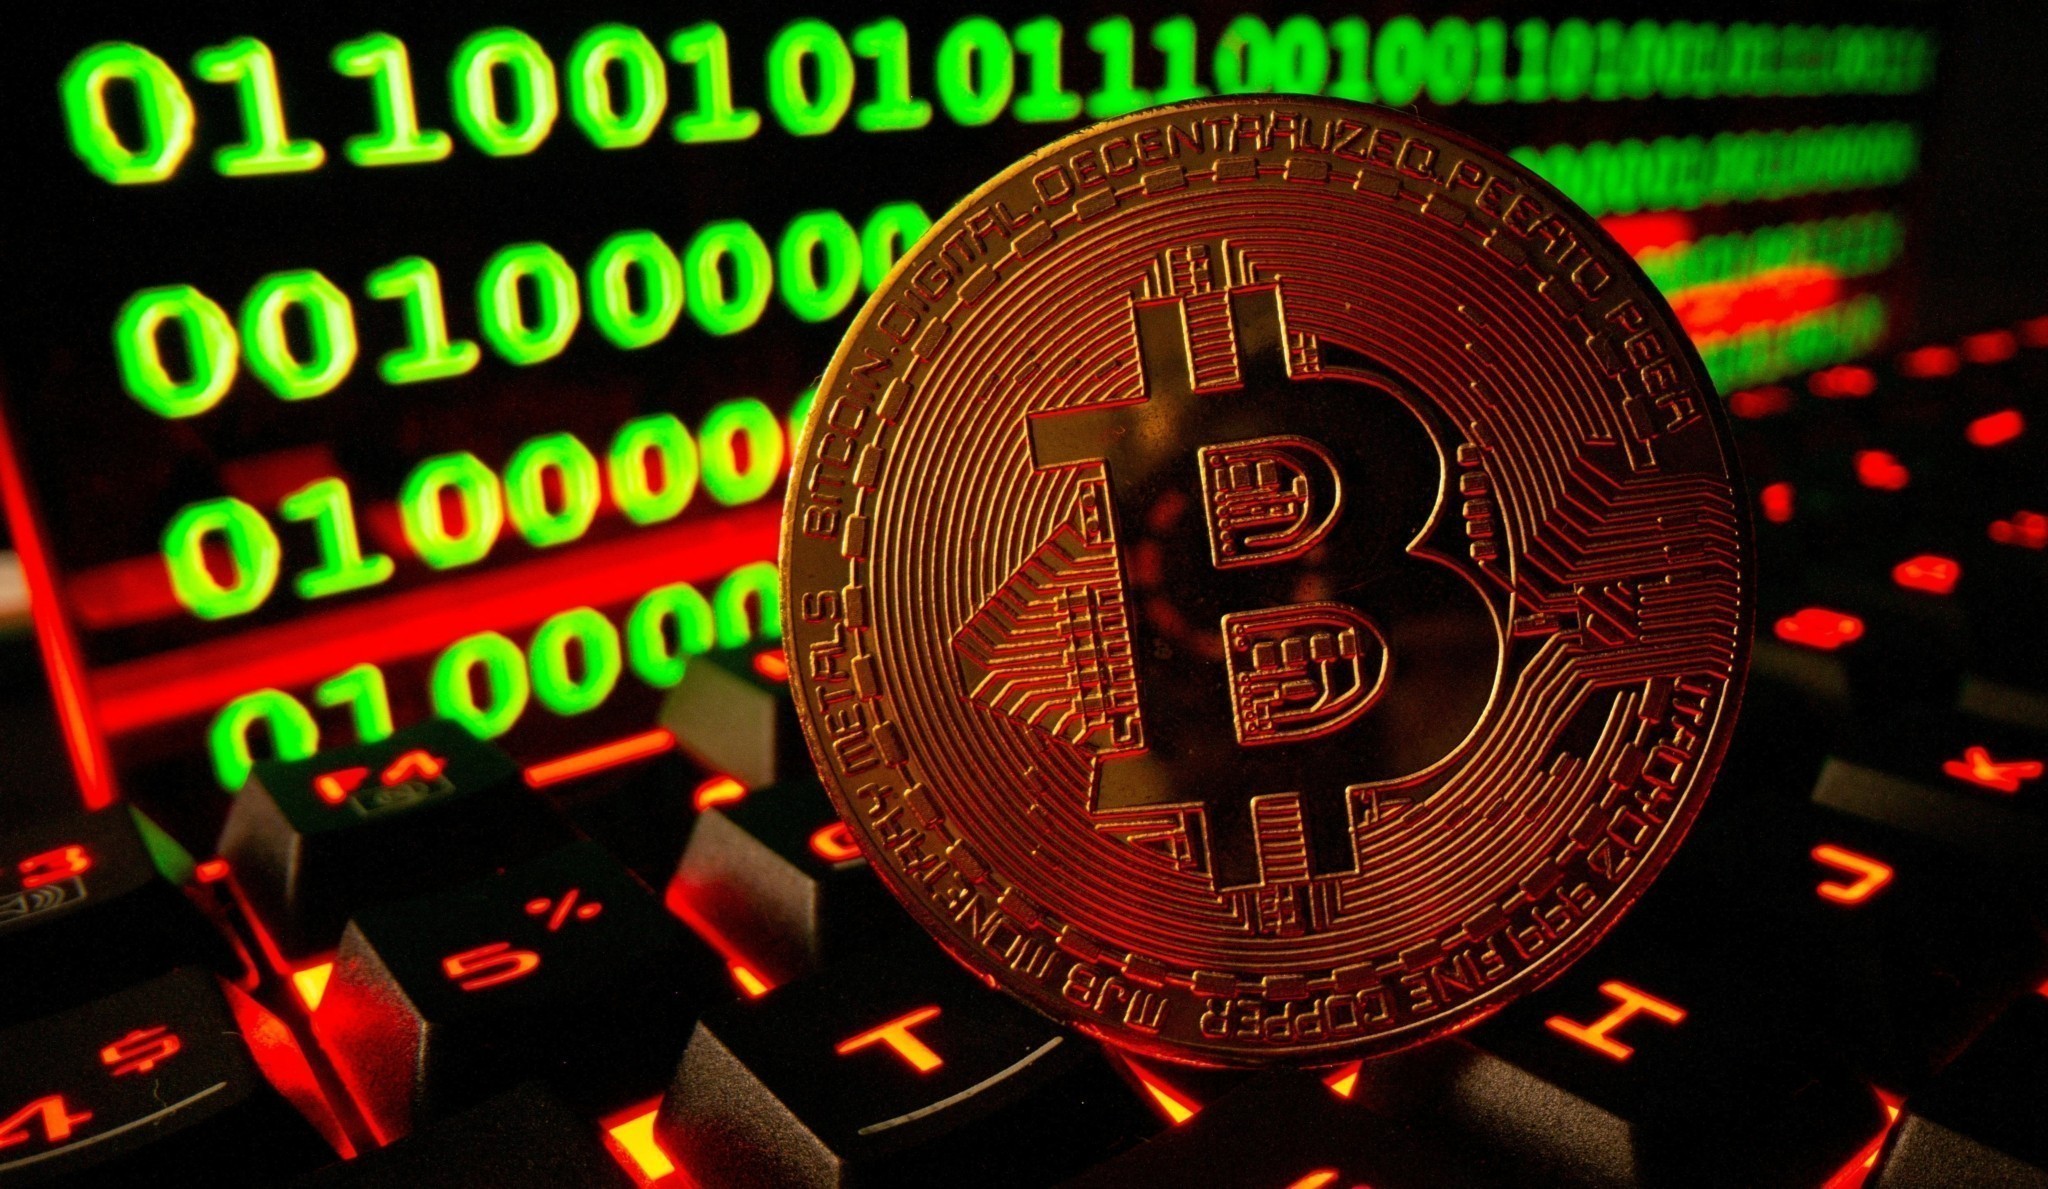 Έρχεται ράλι; «Tαύρος» του bitcoin πουλά μερίδιο της εταιρείας του για να αγοράσει το δημοφιλές crypto